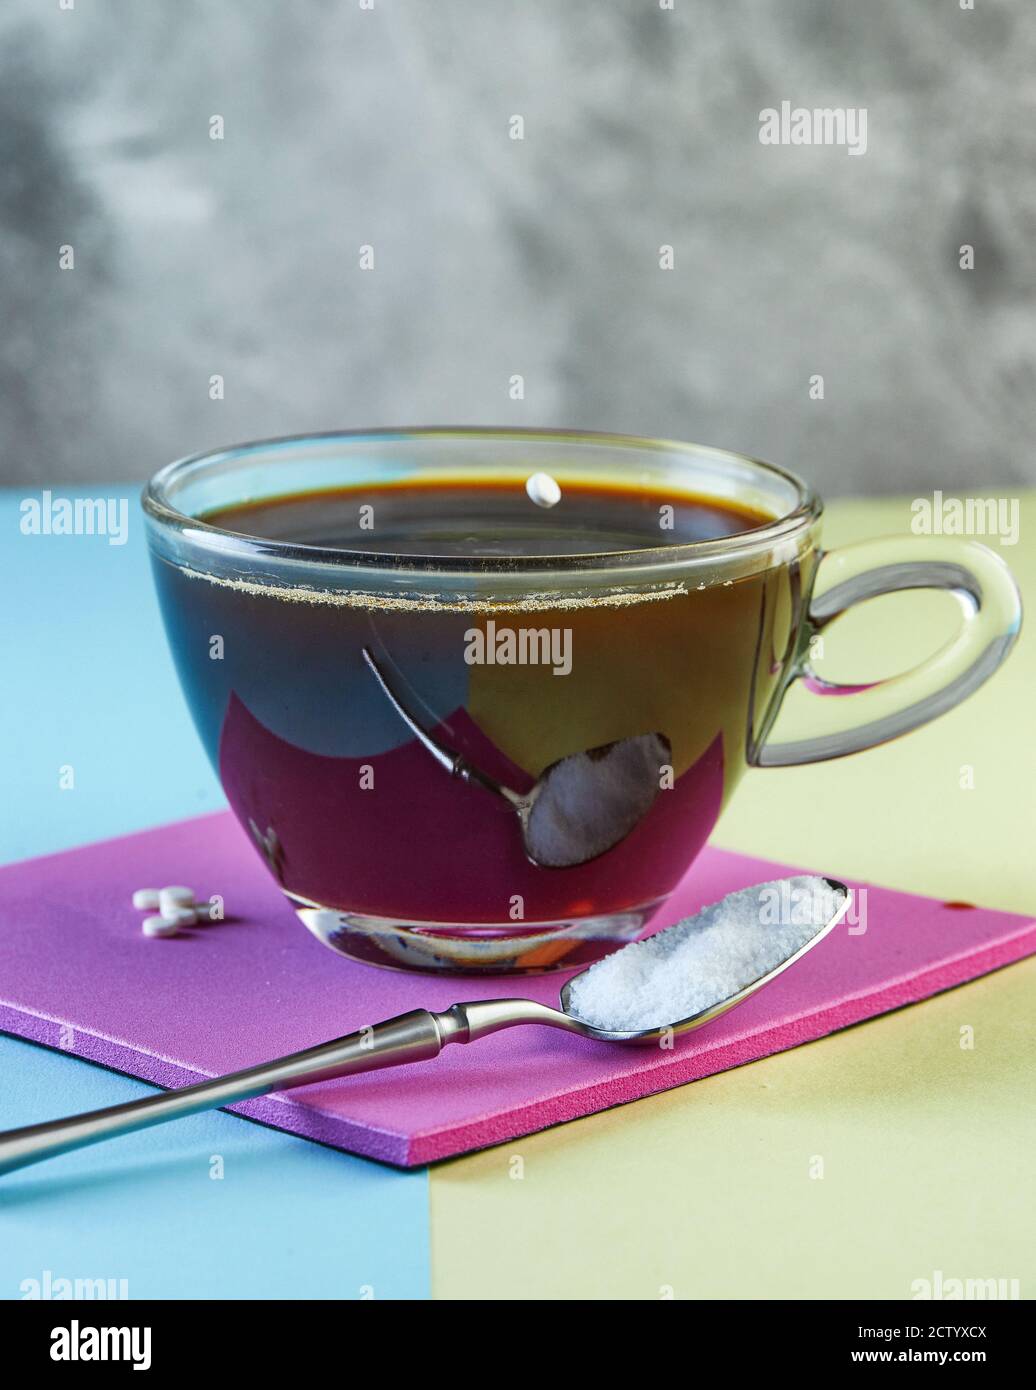 Pille von Zuckerersatz - Süßstoff fallen in eine Tasse Kaffee auf einem  lila Podium Stockfotografie - Alamy